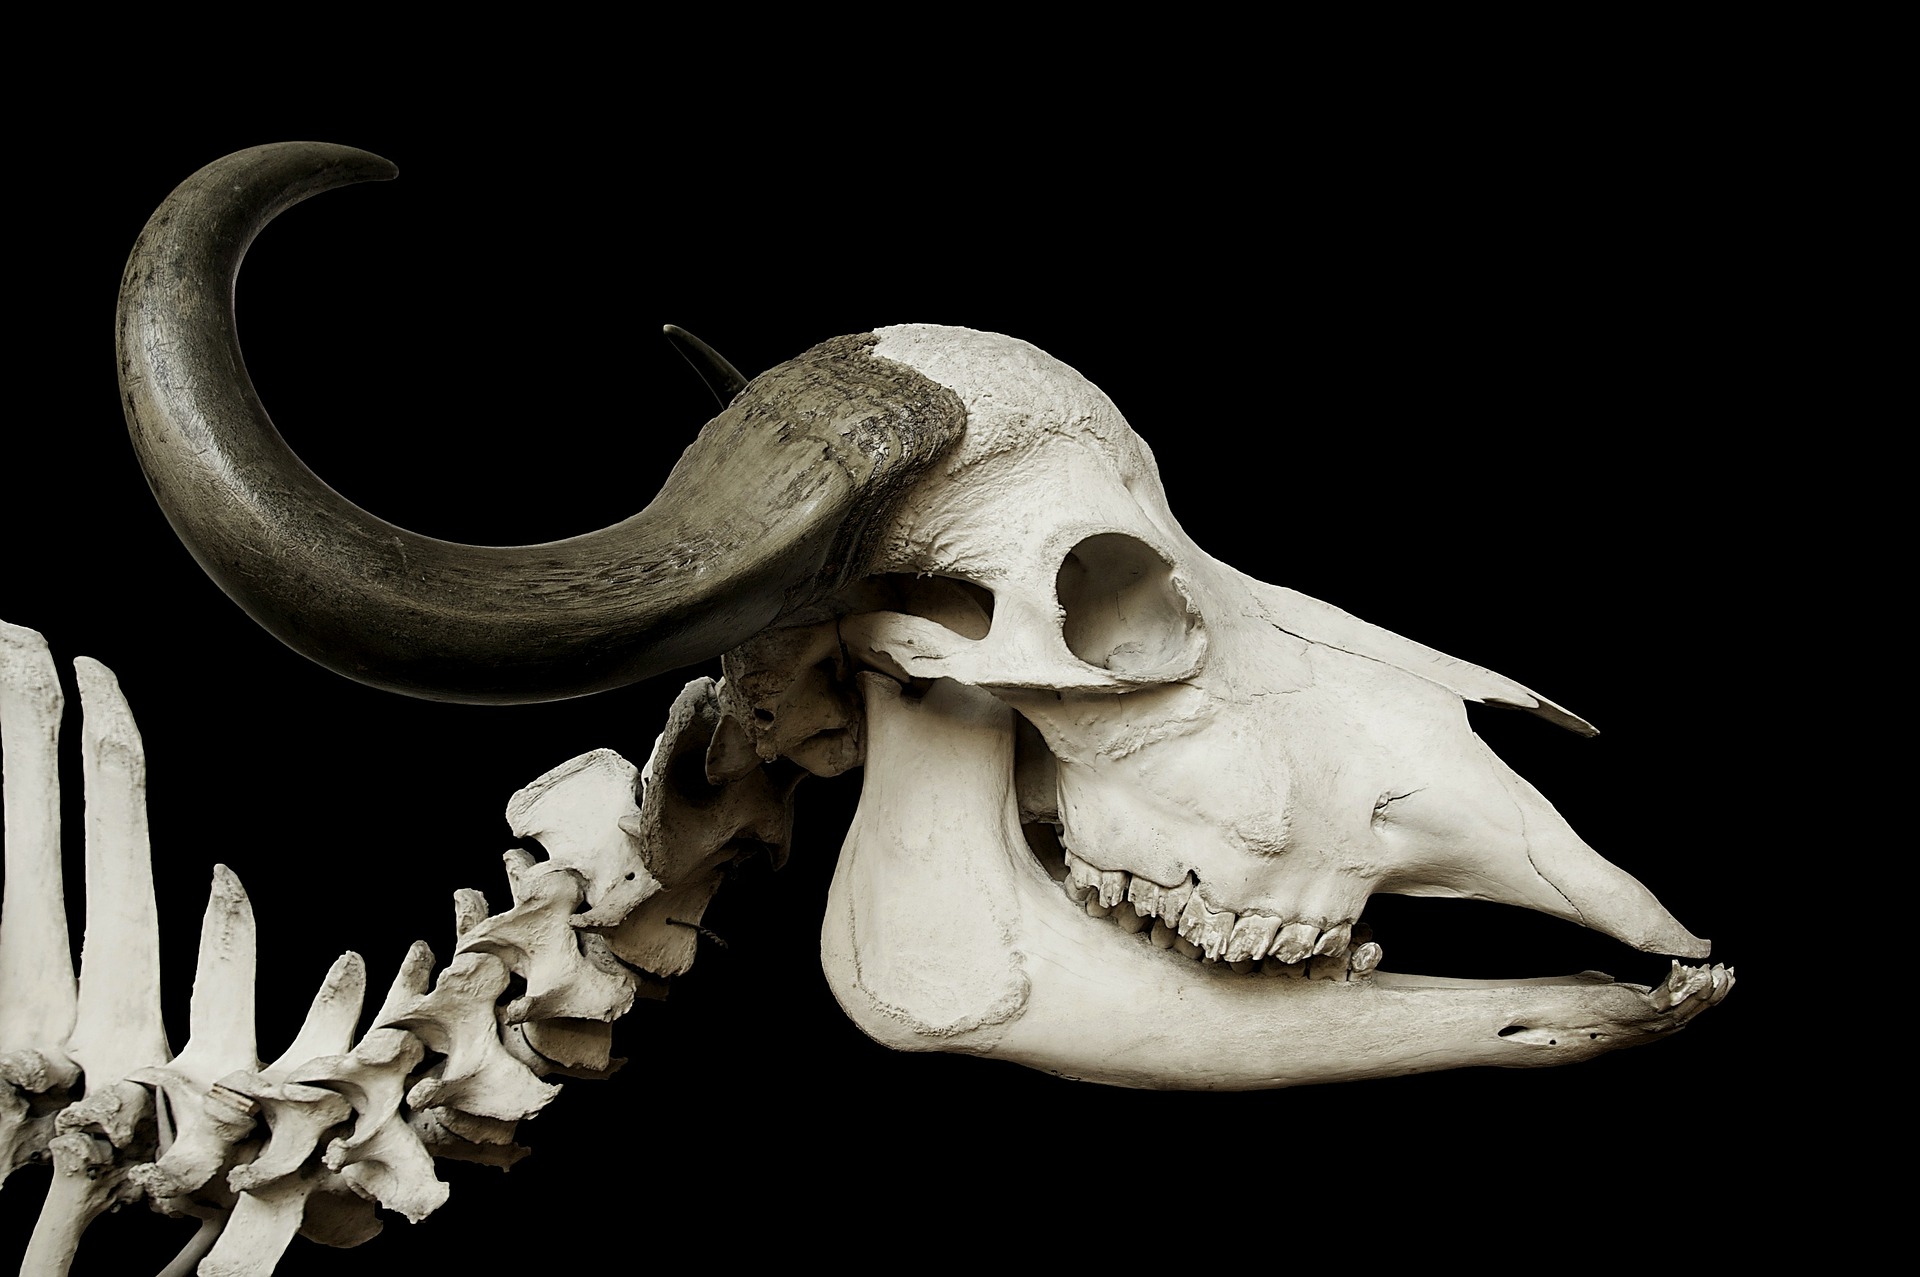 cattle skull 67740 1920